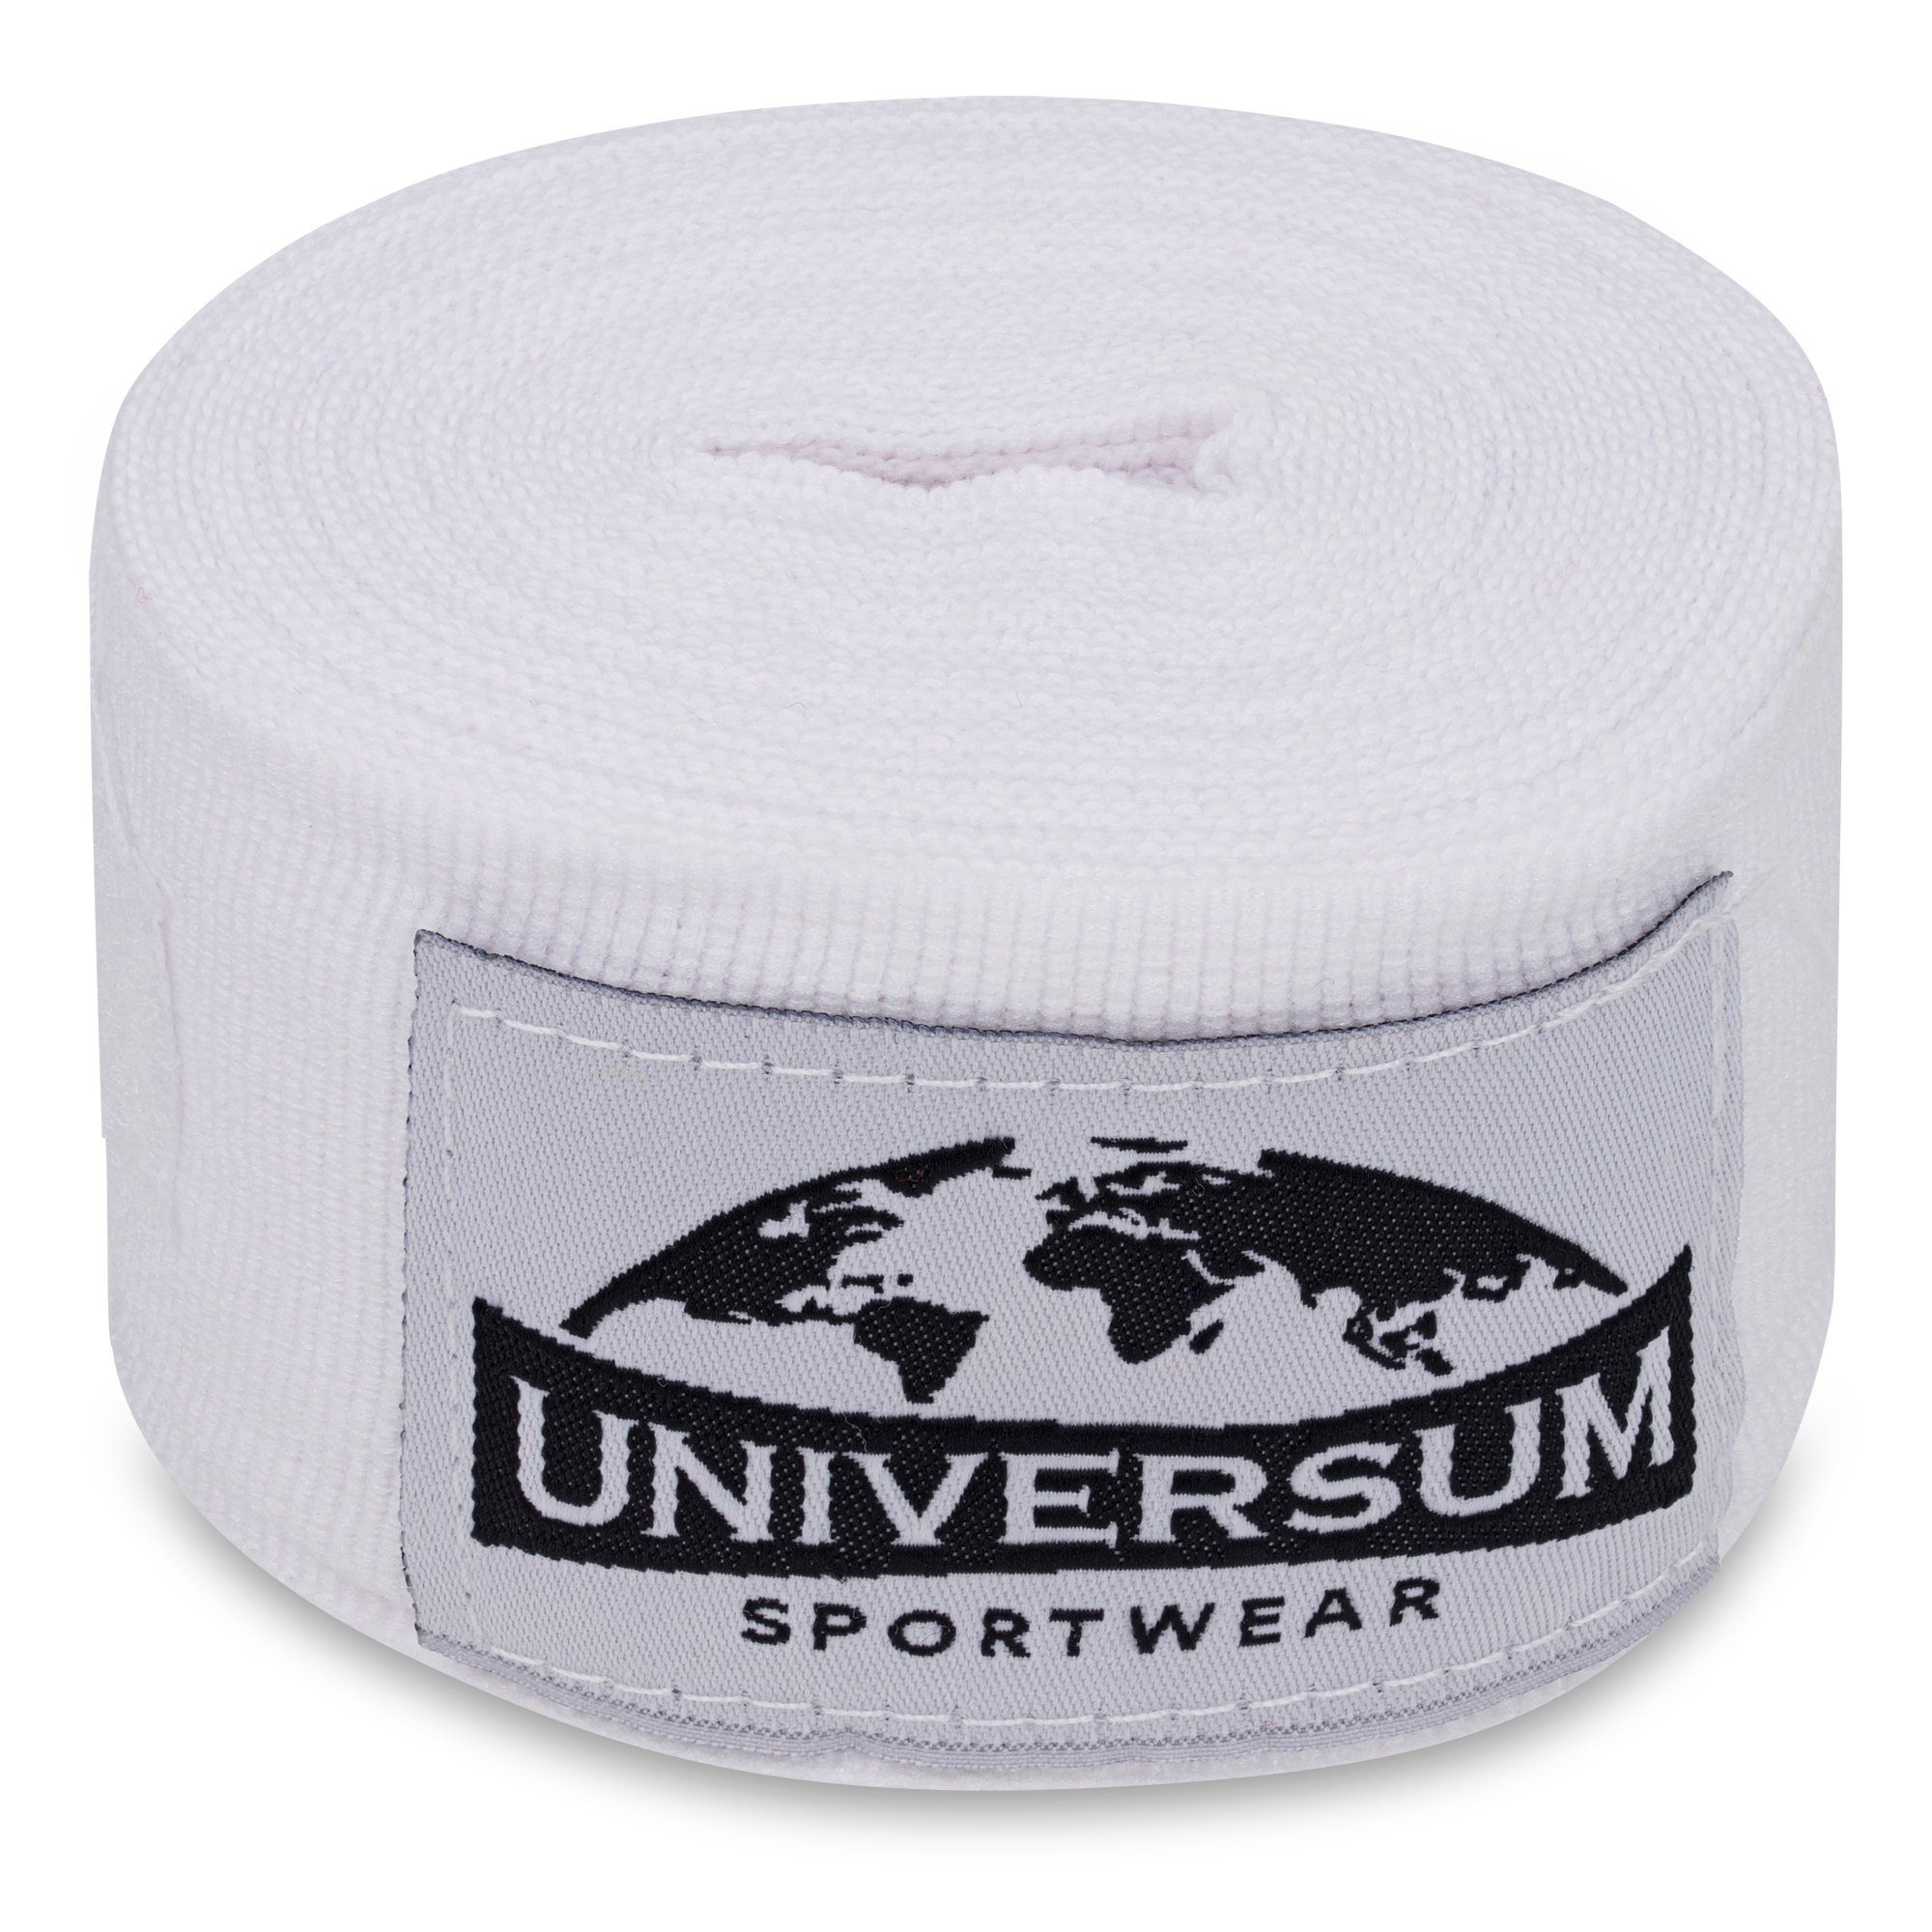 Universum Sportwear Boxbandagen mit Weiß-Schwarz Handgelenk Bandage, langen Klettverschluss